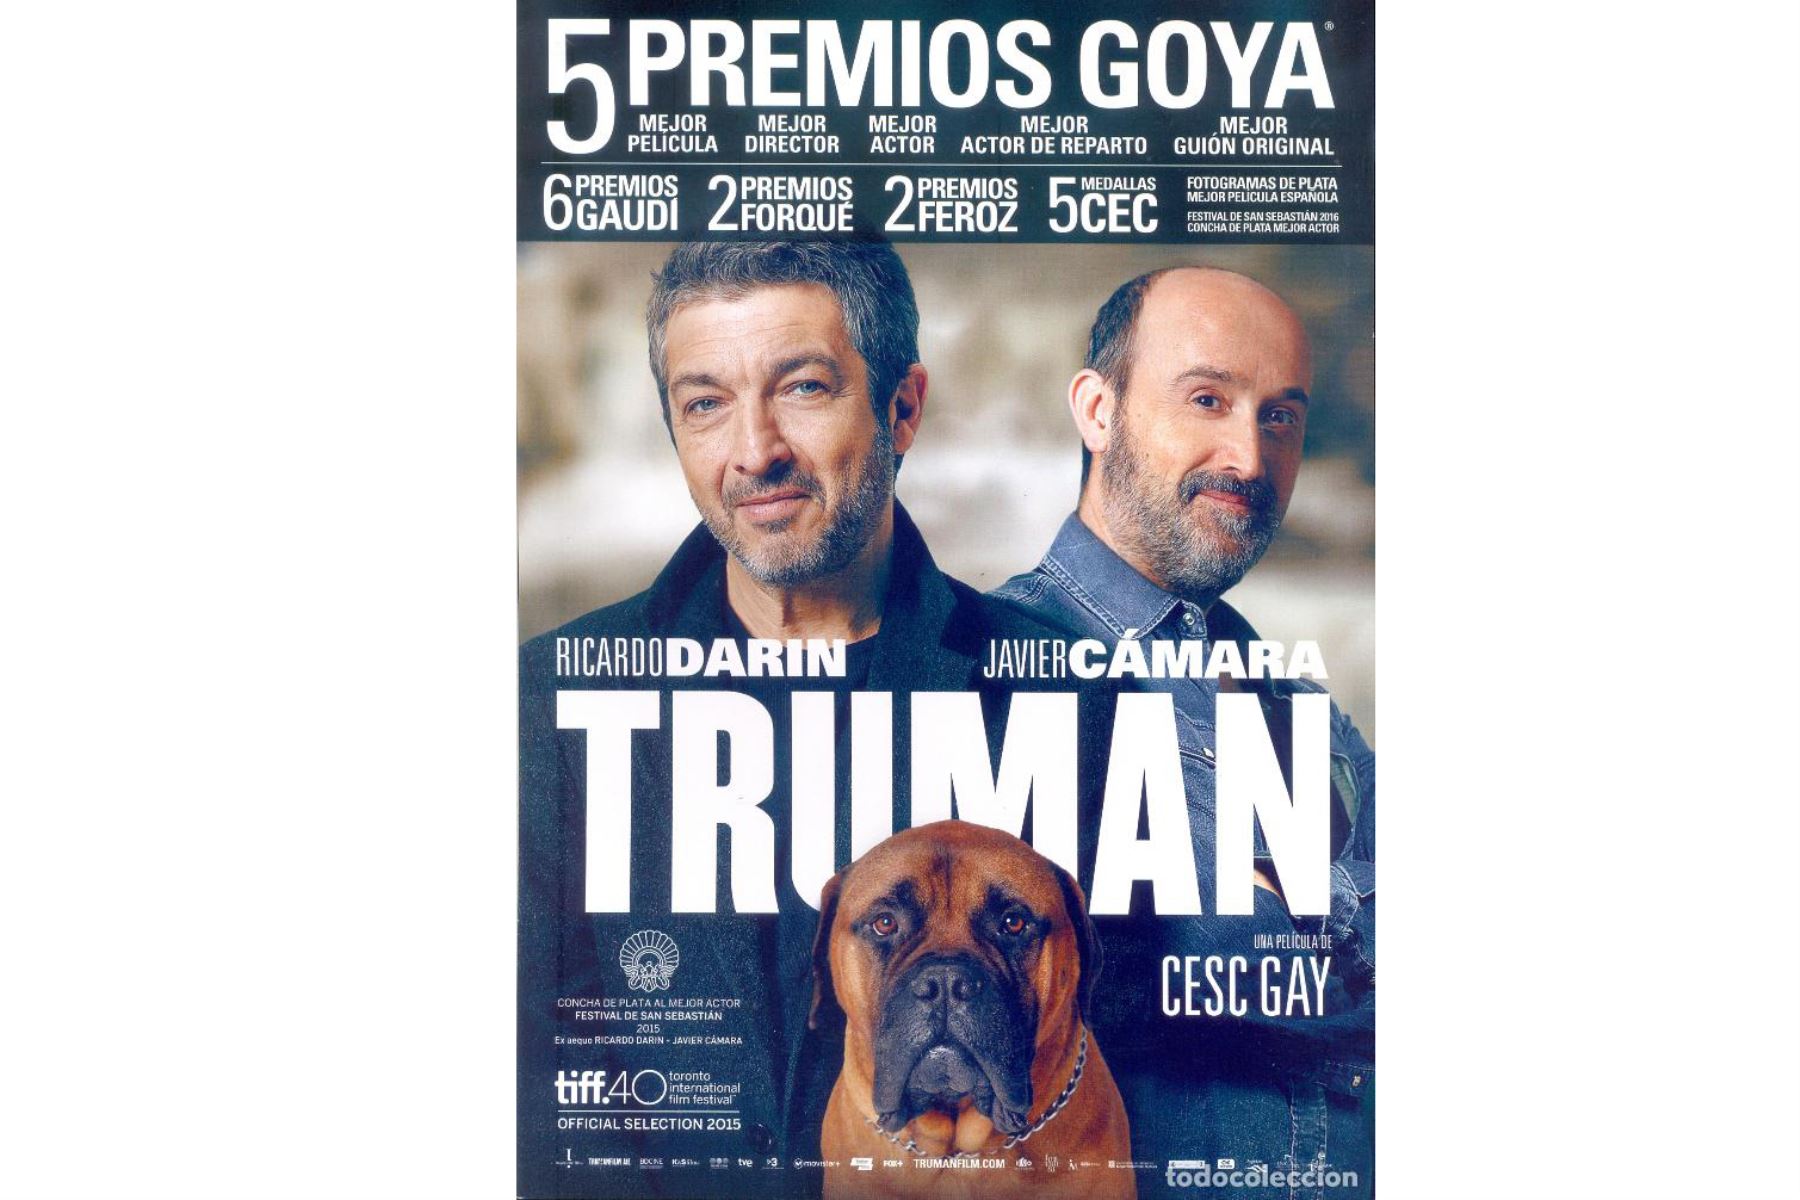 Truman es una película española-argentina de drama de 2015 coescrita y dirigida por Cesc Gay y protagonizada por Ricardo Darín.
Foto: Difusión